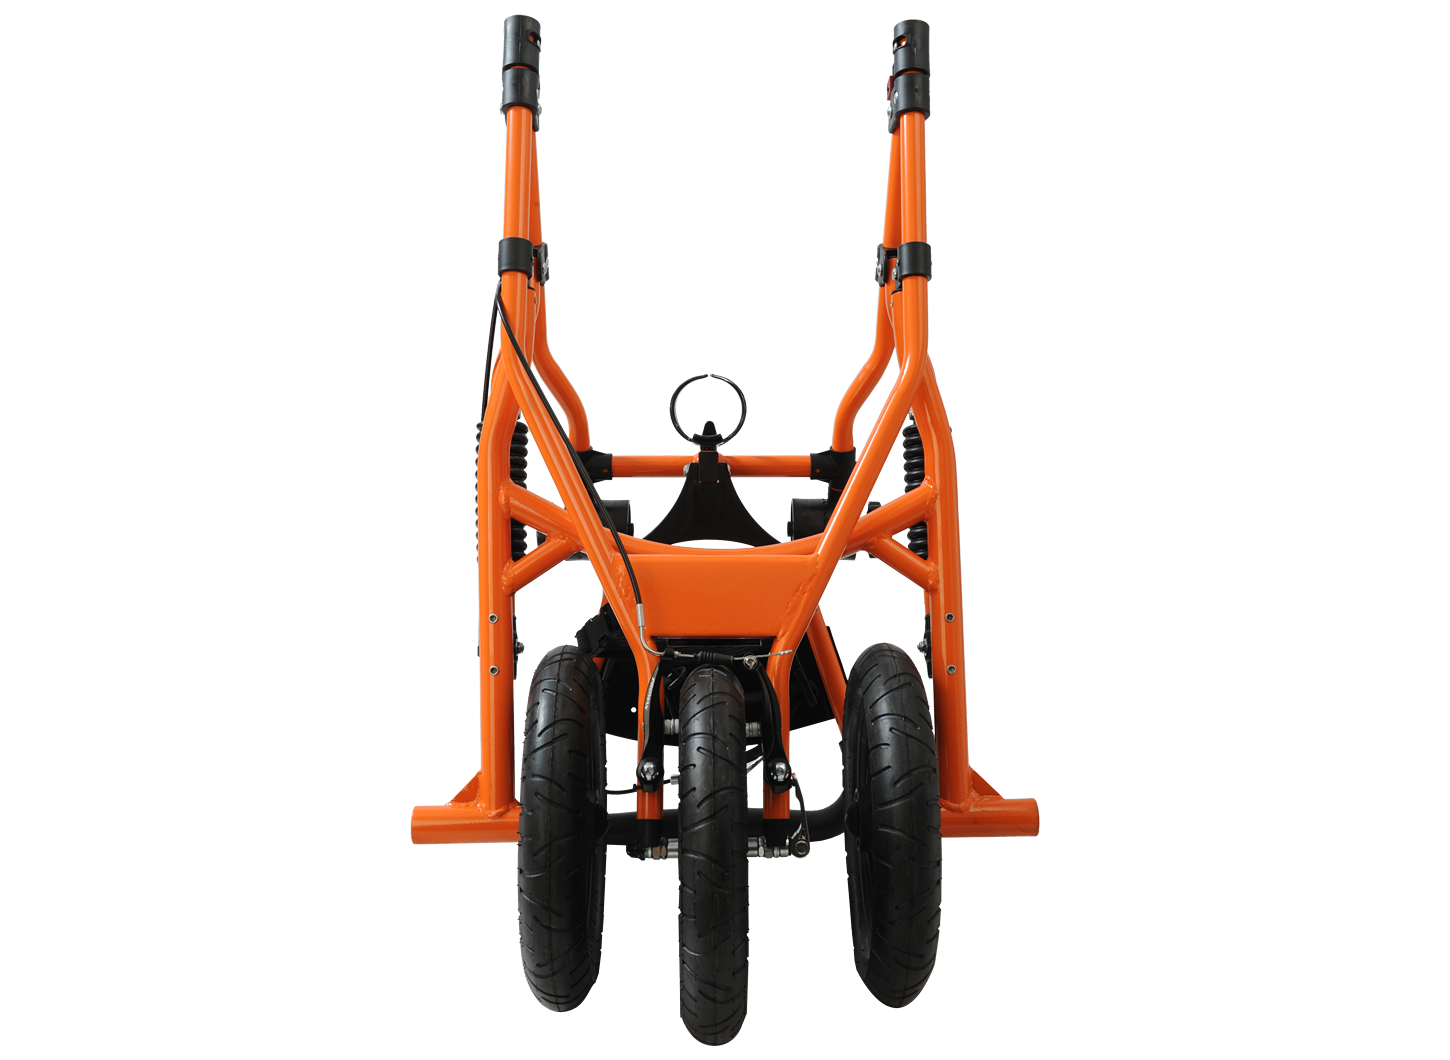 Kaddy Stroller in Atomic Orange